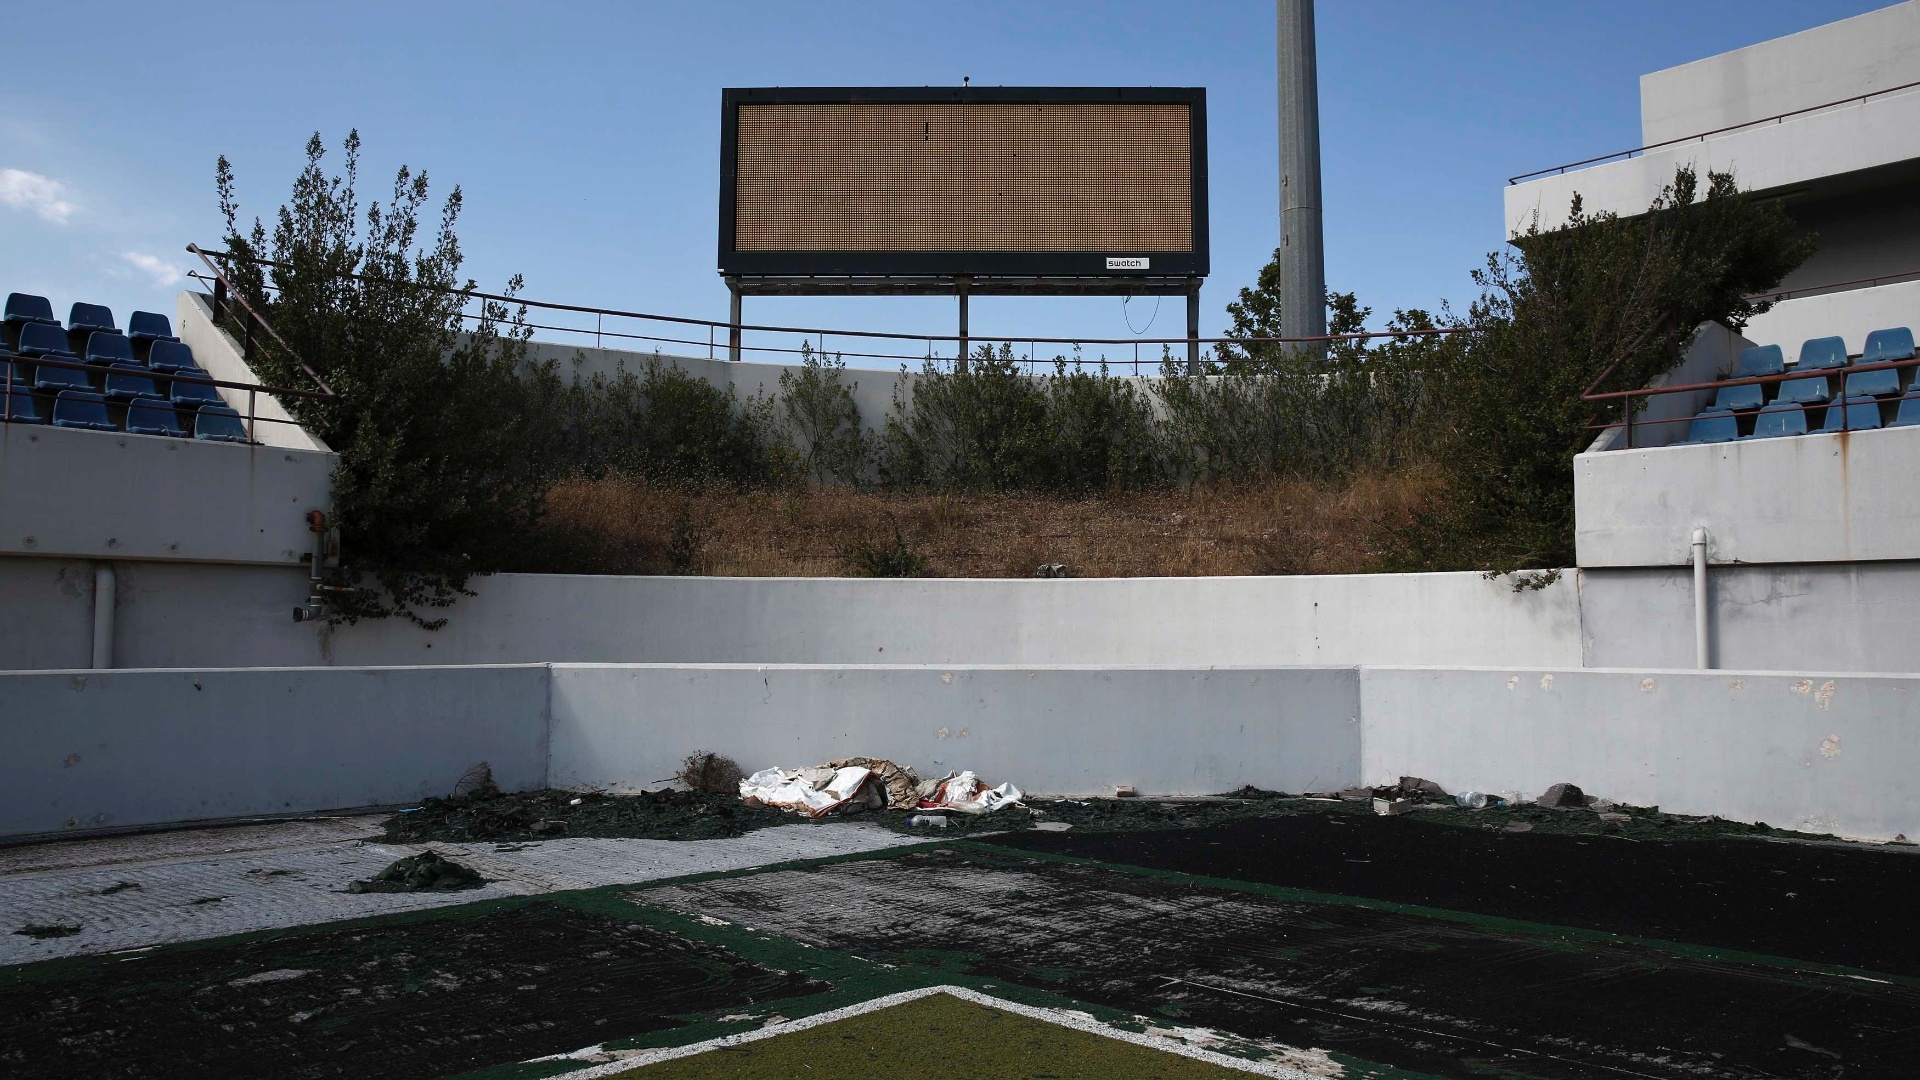 16.jul.2014 - Estádio que recebeu os jogos de hóquei na grama na Olimpíada de Atenas também está inutilizado, 10 anos depois após o evento